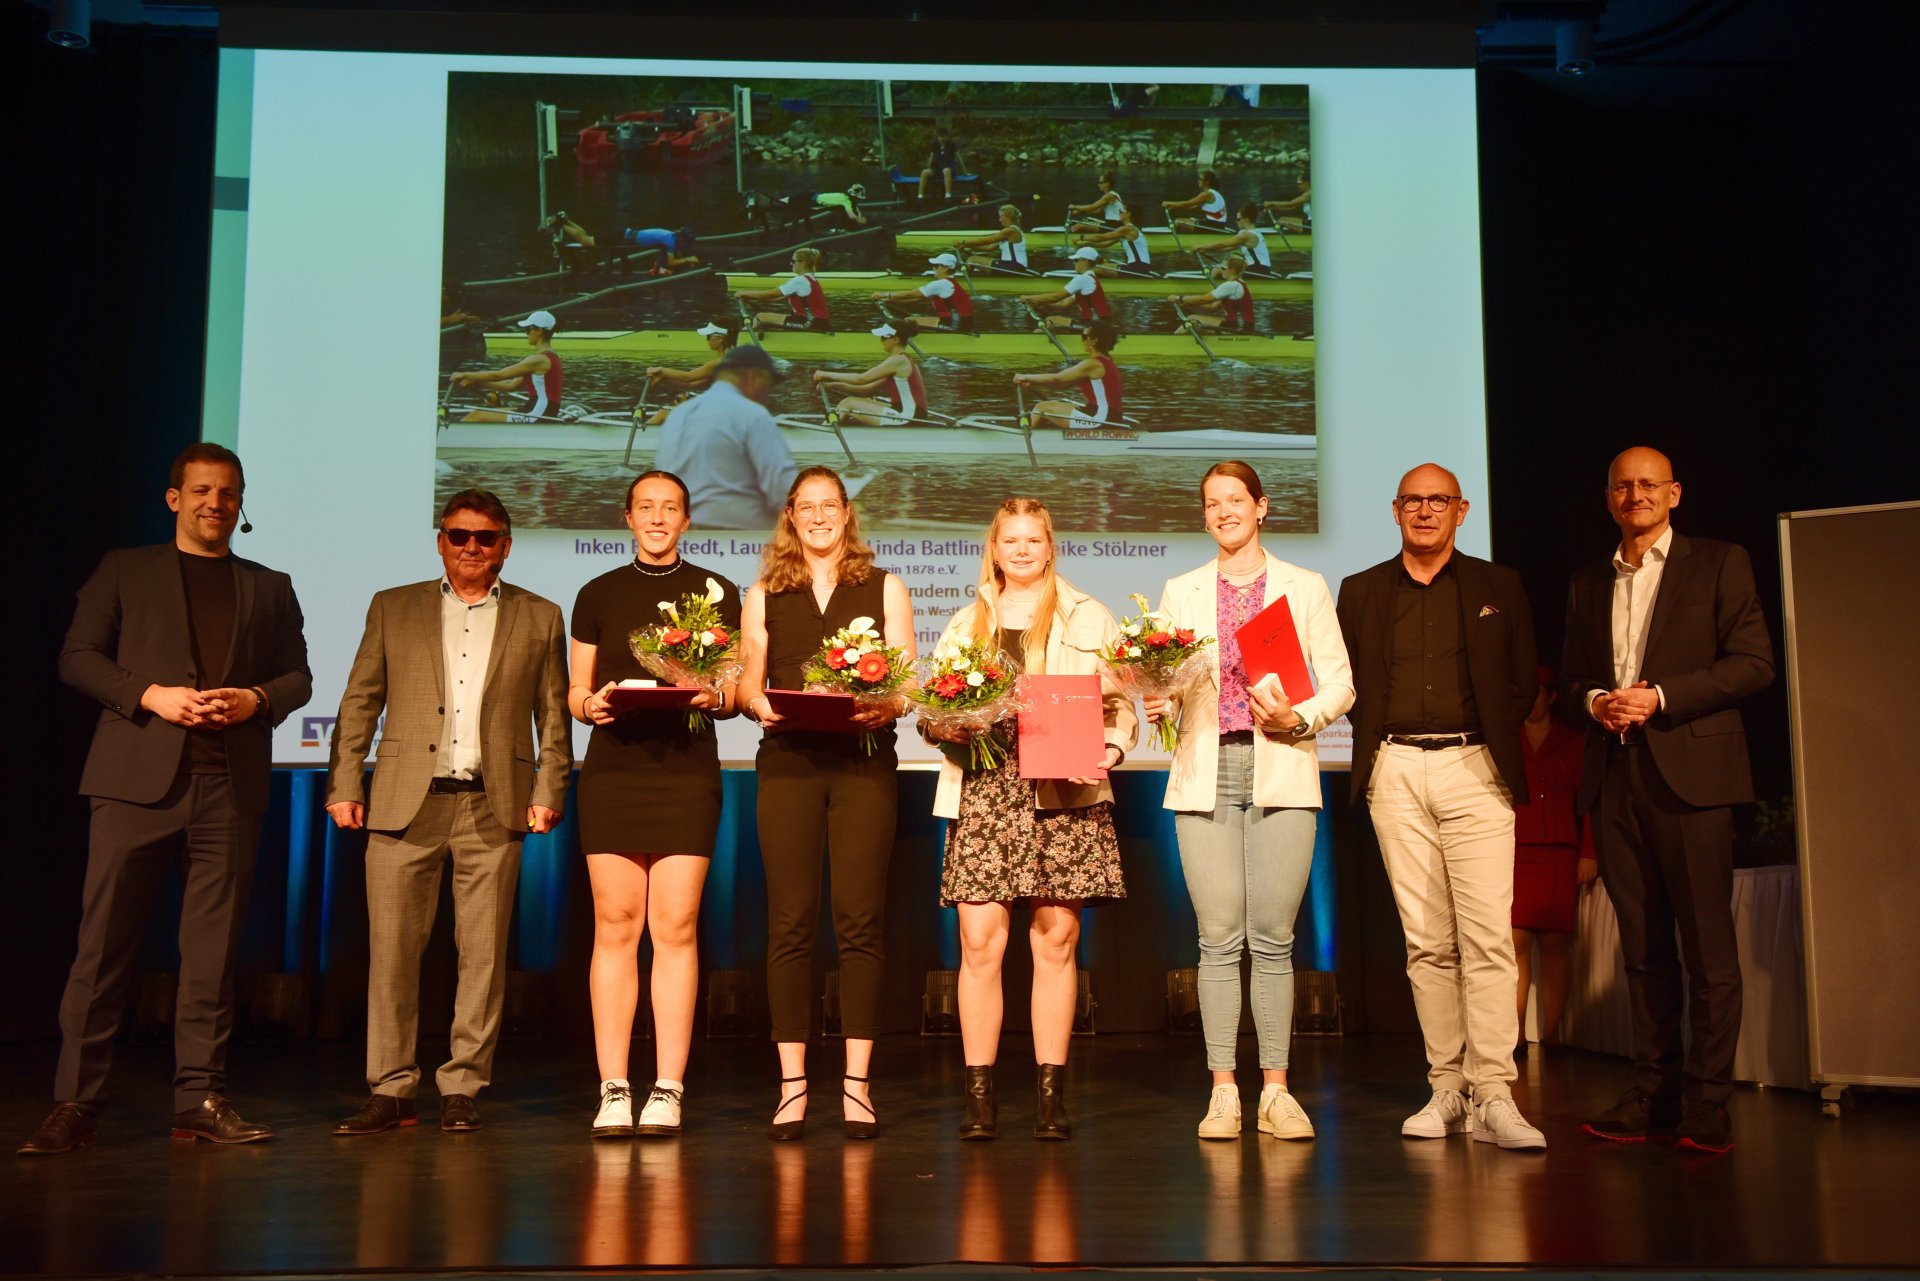 Raphaela Werner, Inken Bargstedt und Mareike Stölzner gehörten zu den erfolgreichen Athletinnen des Mainzer Ruder-Vereins mit einem DM-Titel und Topplatzierungen bei Europa- und Weltmeisterschaften.